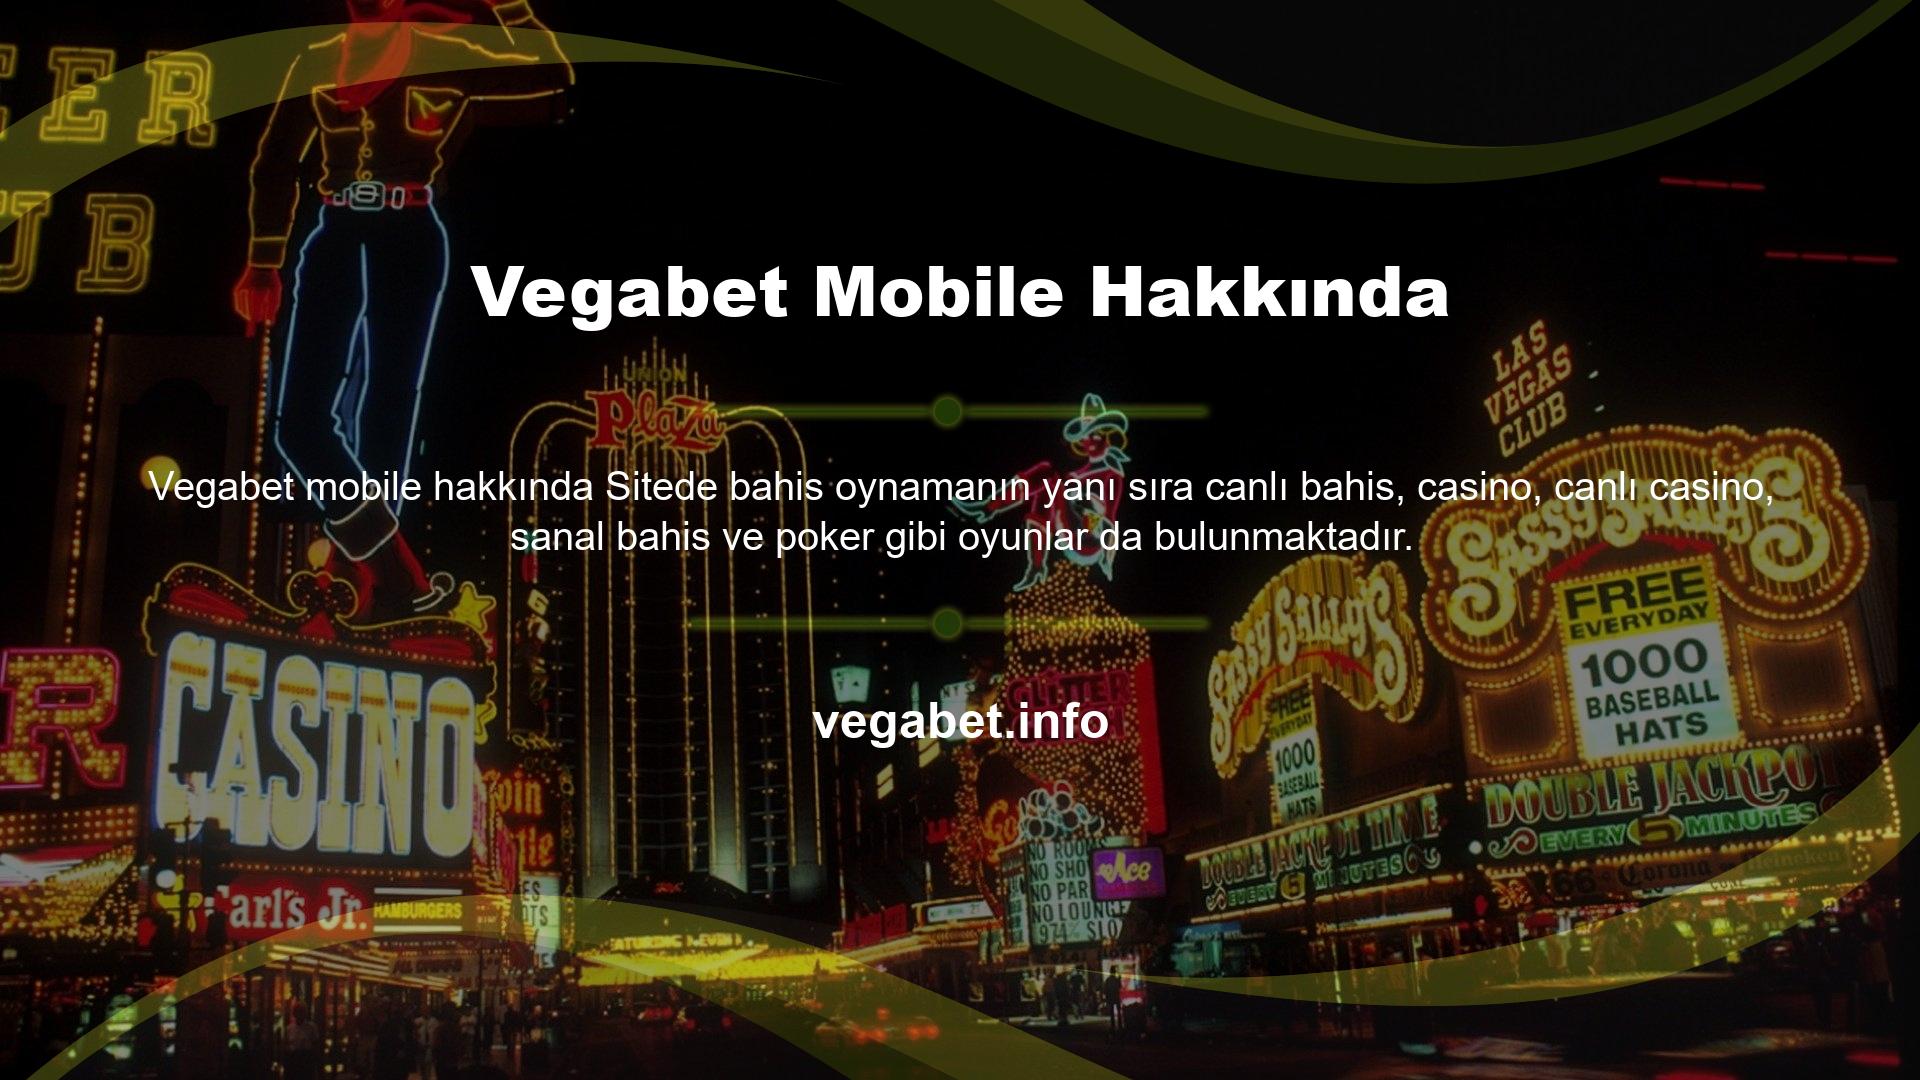 Vegabet web sitesi tüm Türkiye pazarını kapsamakta ve Türk müşterilere her zaman özel oyunlar ve özel bonuslar sunmaktadır